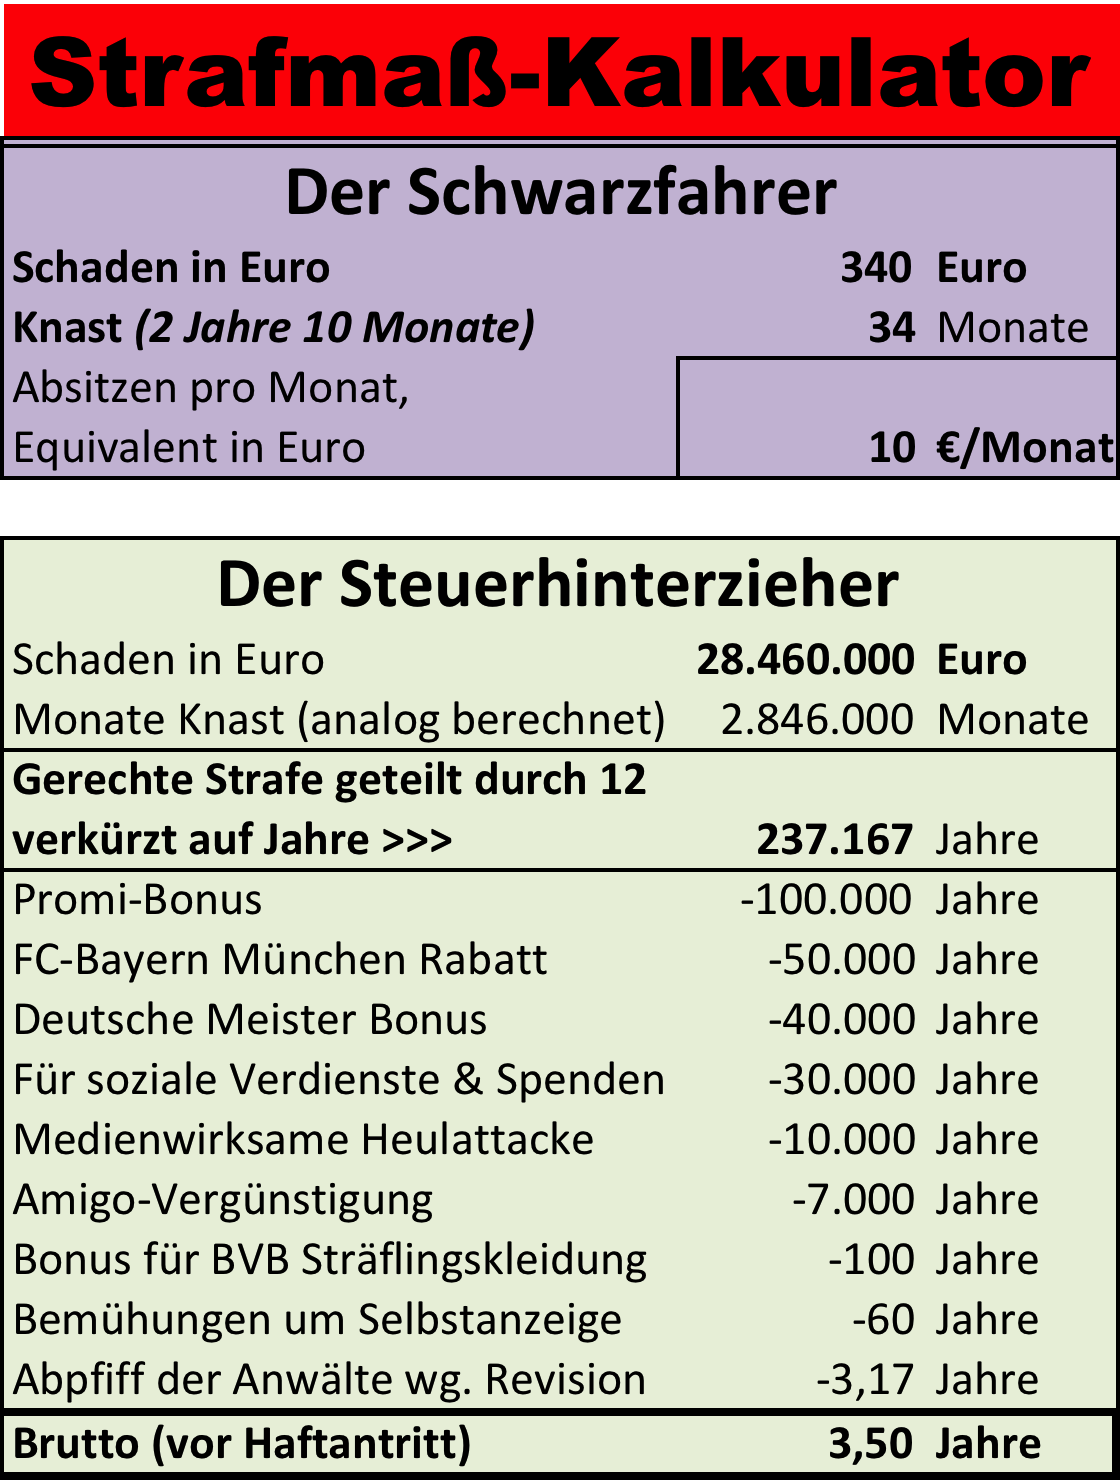 Strafmaß-Kalkulator, 237.167 Jahre Knast für Uli Hoeneß minus Boni macht 21 Monate